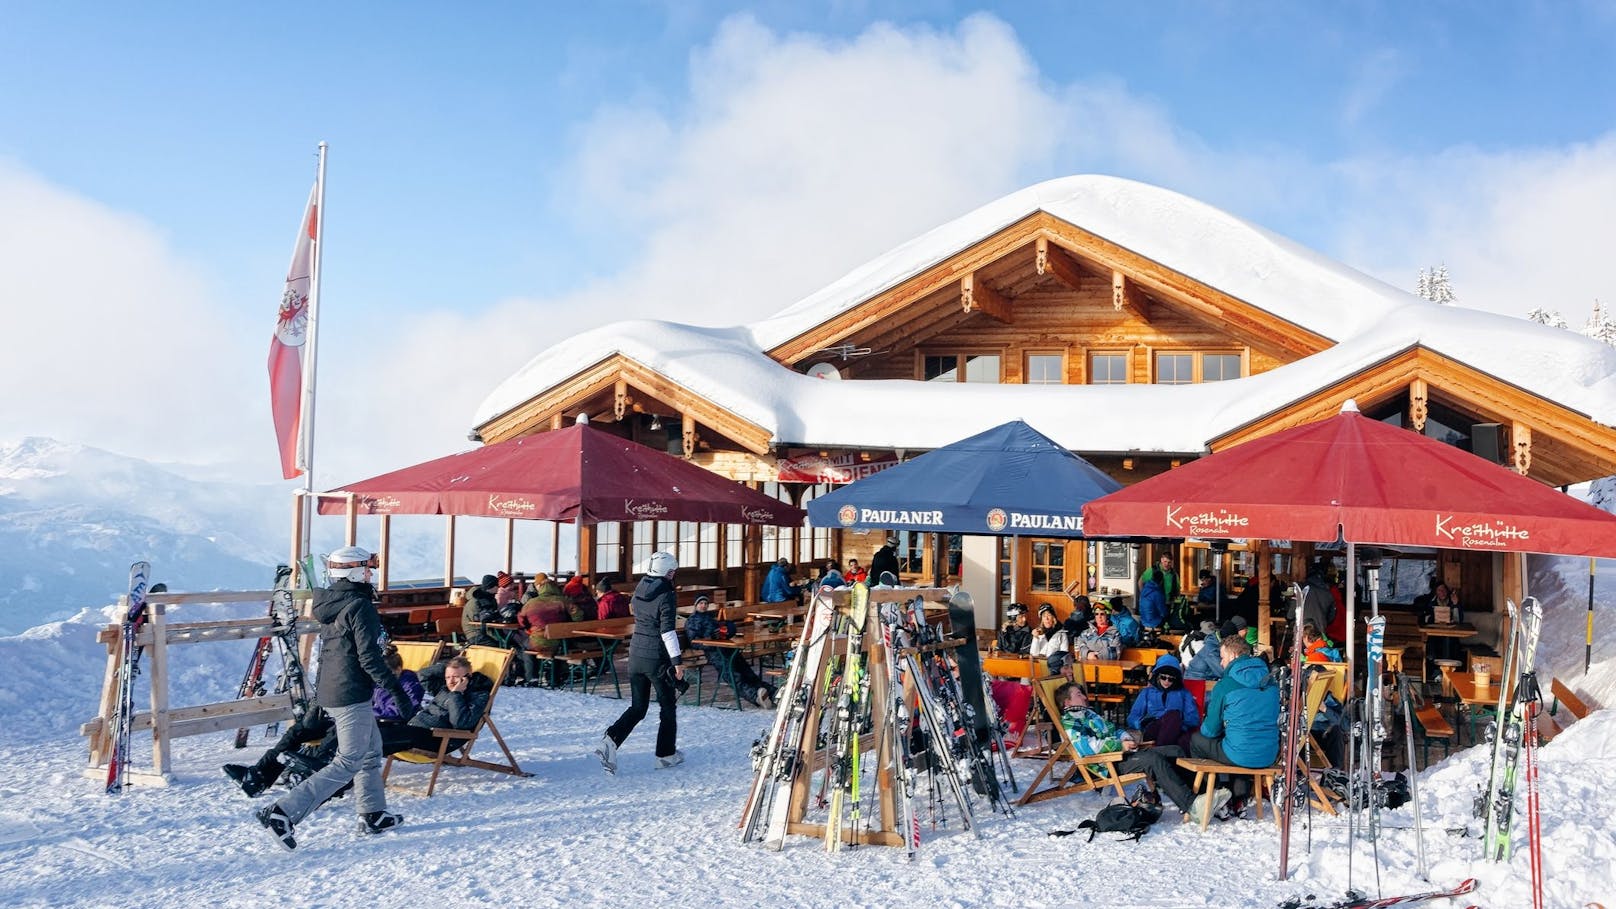 Preisschock in Skihütten – fast 10 Euro für Würstel